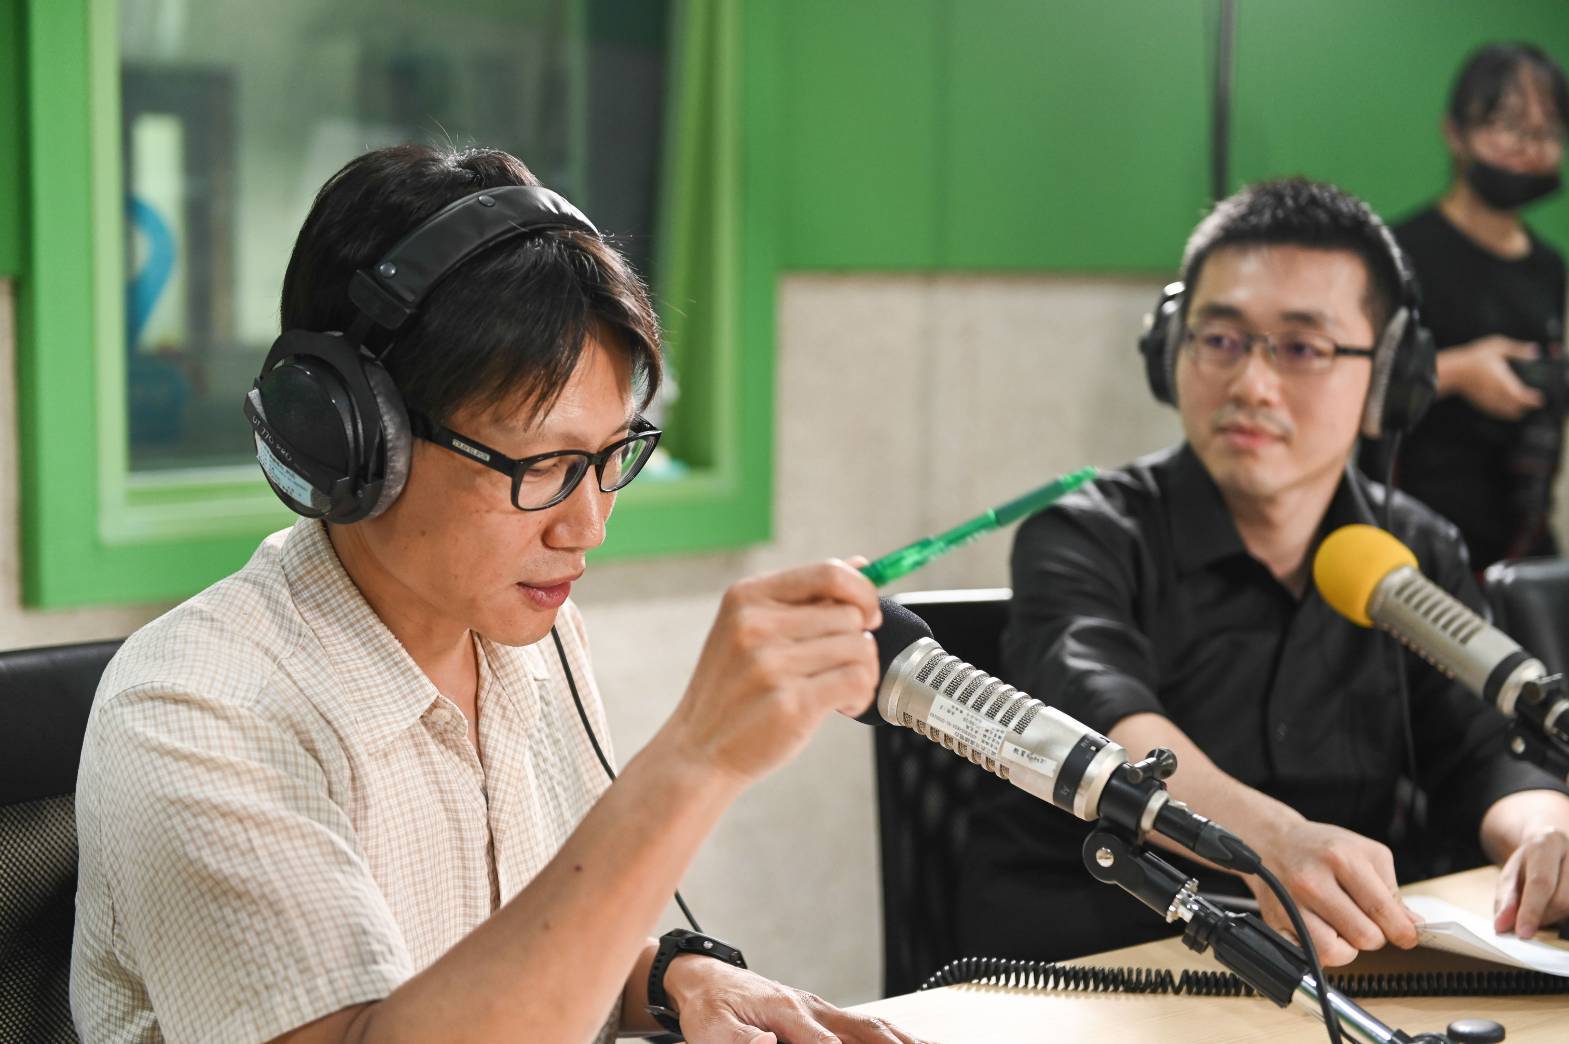 紀錄片導演陳正勳專注地聆聽節目主持人邱一峰的問題